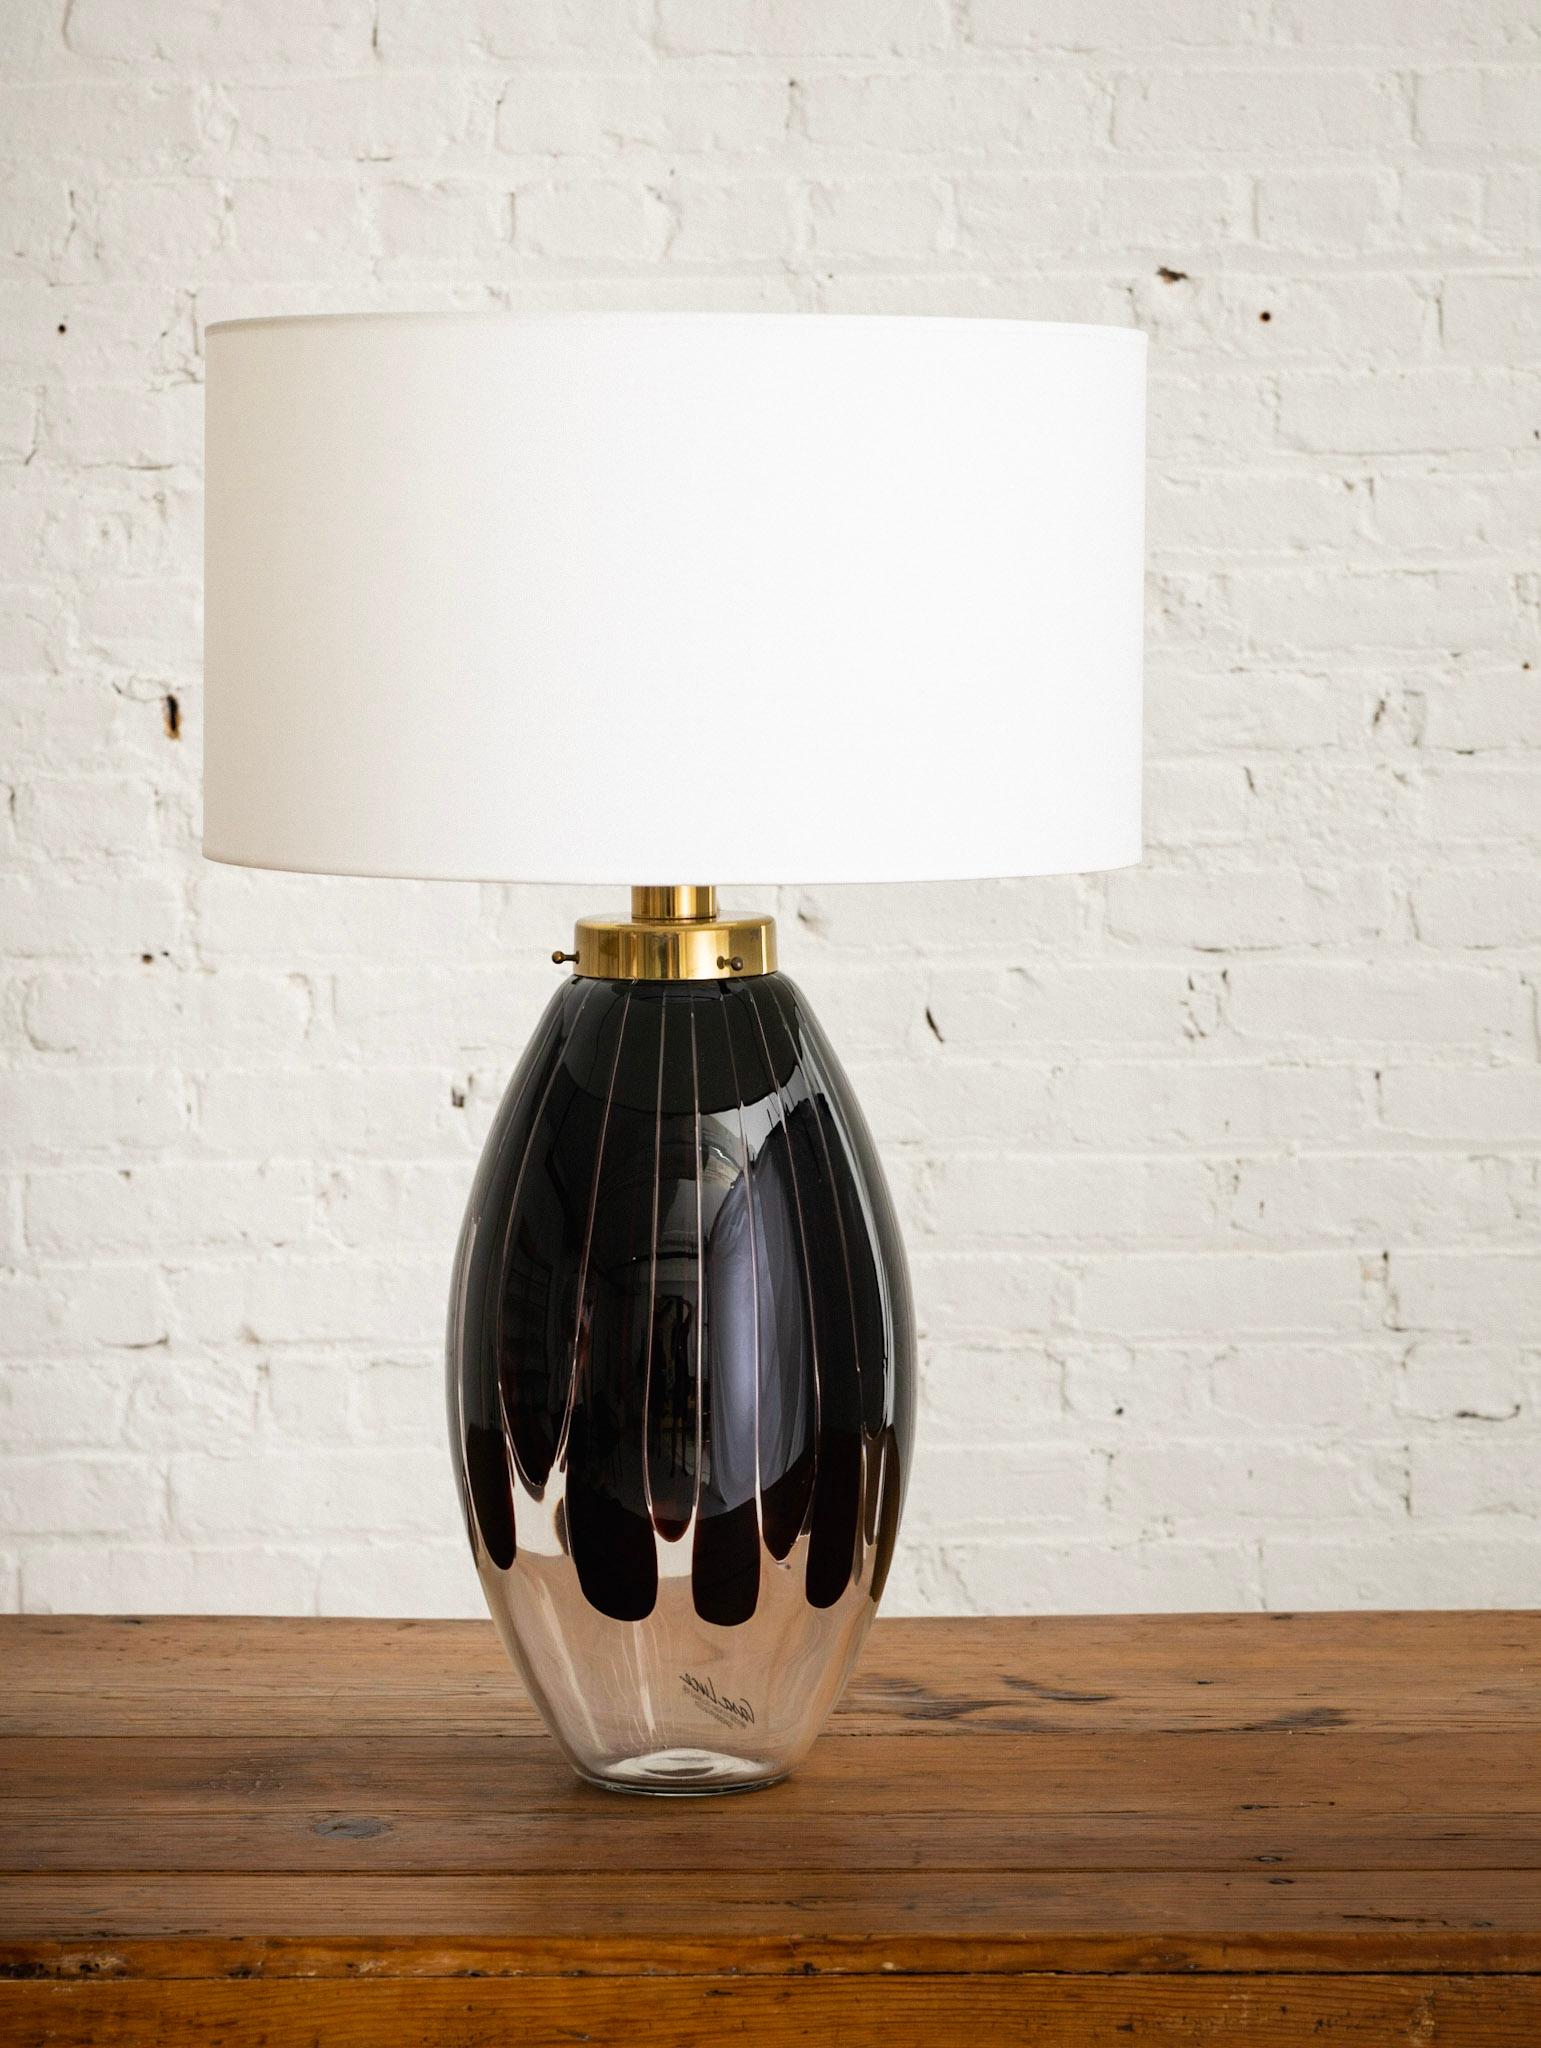 Eine italienische Tischlampe, hergestellt von Casa Luce für Scandinavian Gallery. Transparentes Glas mit einer dunklen bernsteinfarbenen/molassesfarbenen Tropfenform. Beschläge aus Messing. Die Lampe verfügt über eine obere und eine innere